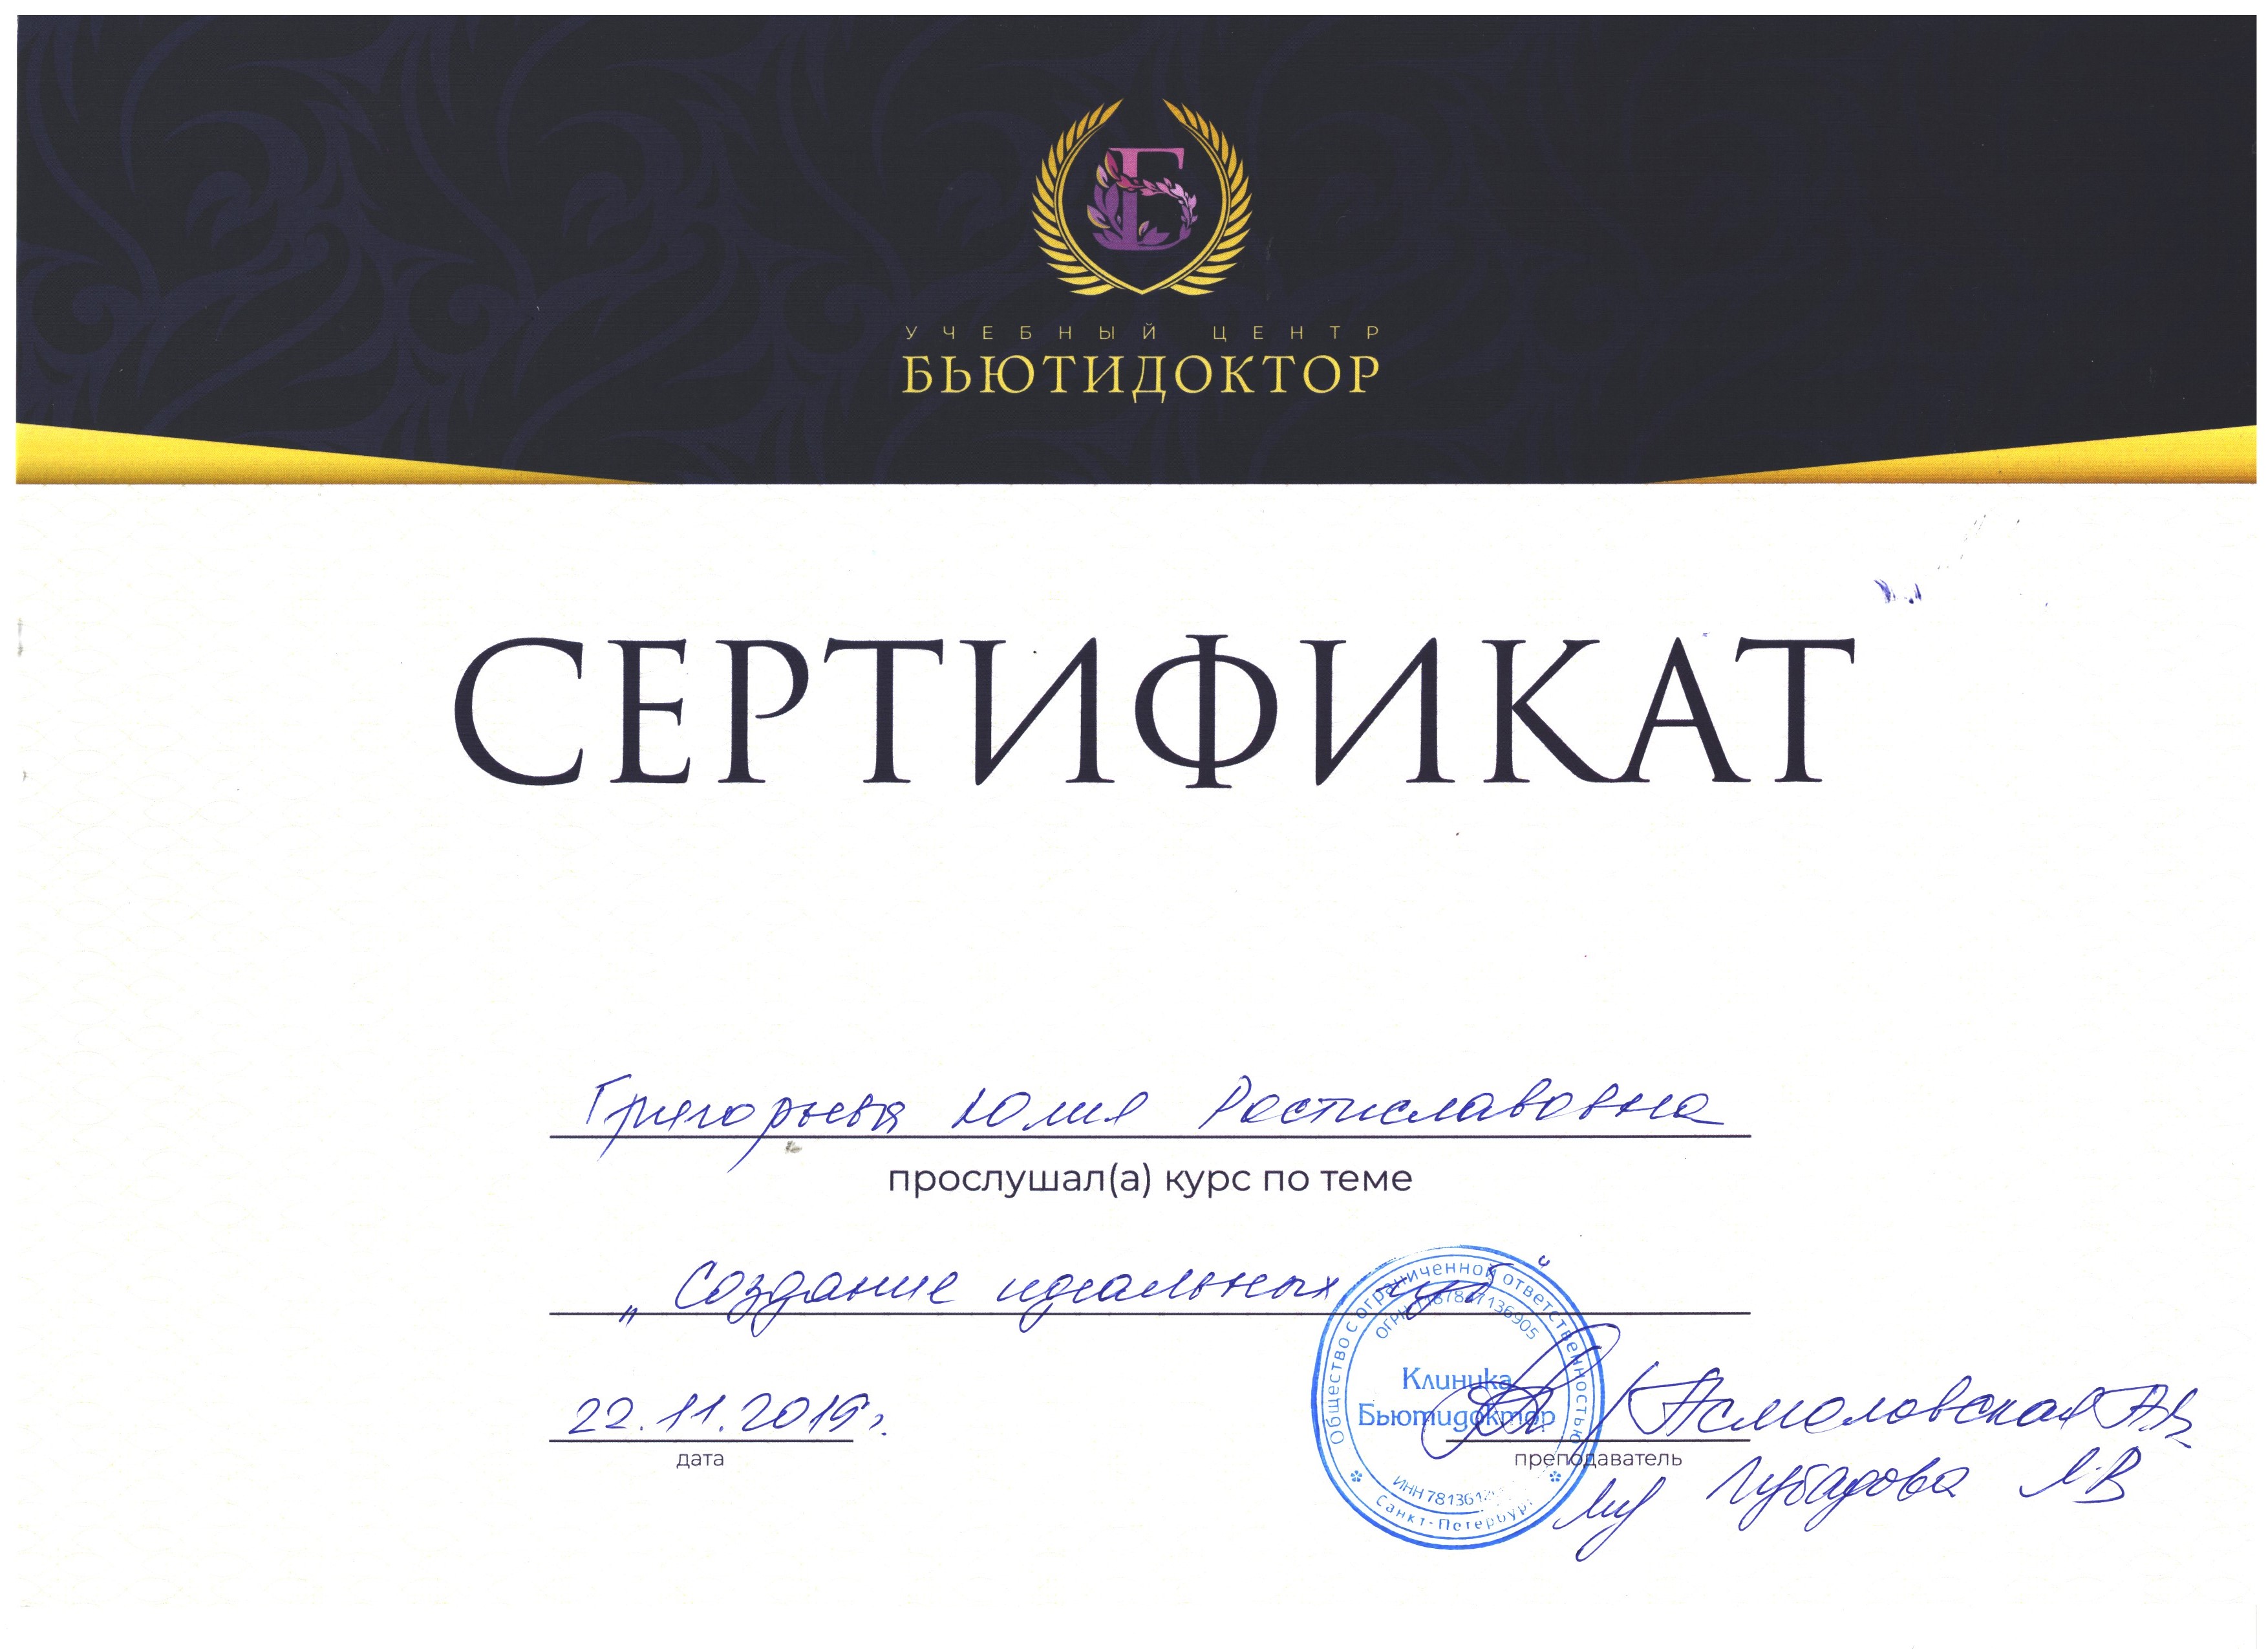 Сертификат — Курс «Создание идеальных губ». Григорьева Юлия Ростиславовна